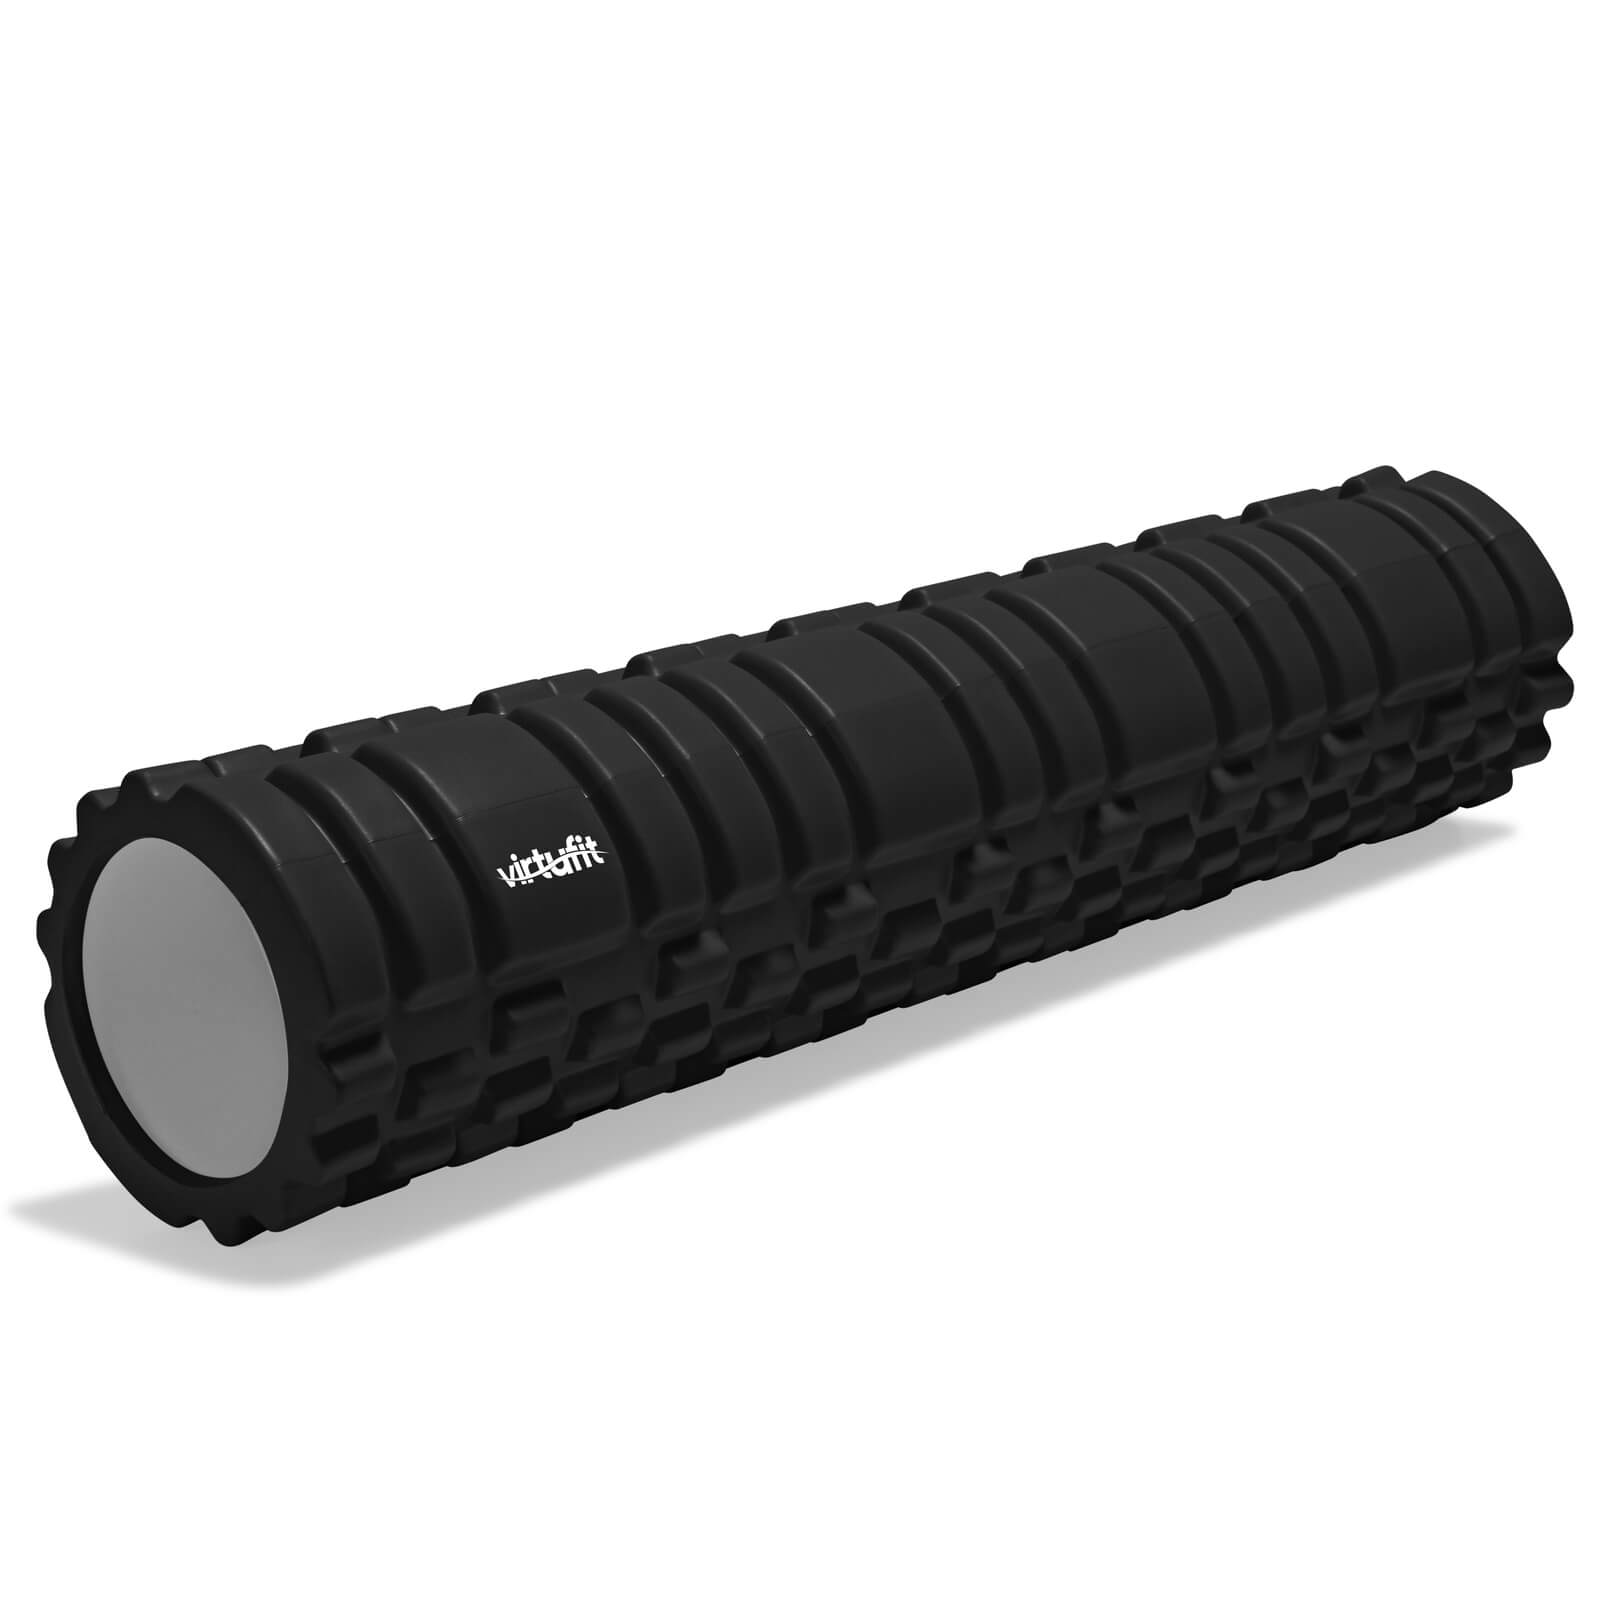 Sjekke Grid Foam Roller 62 cm, black, VirtuFit hos SportGymButikken.no